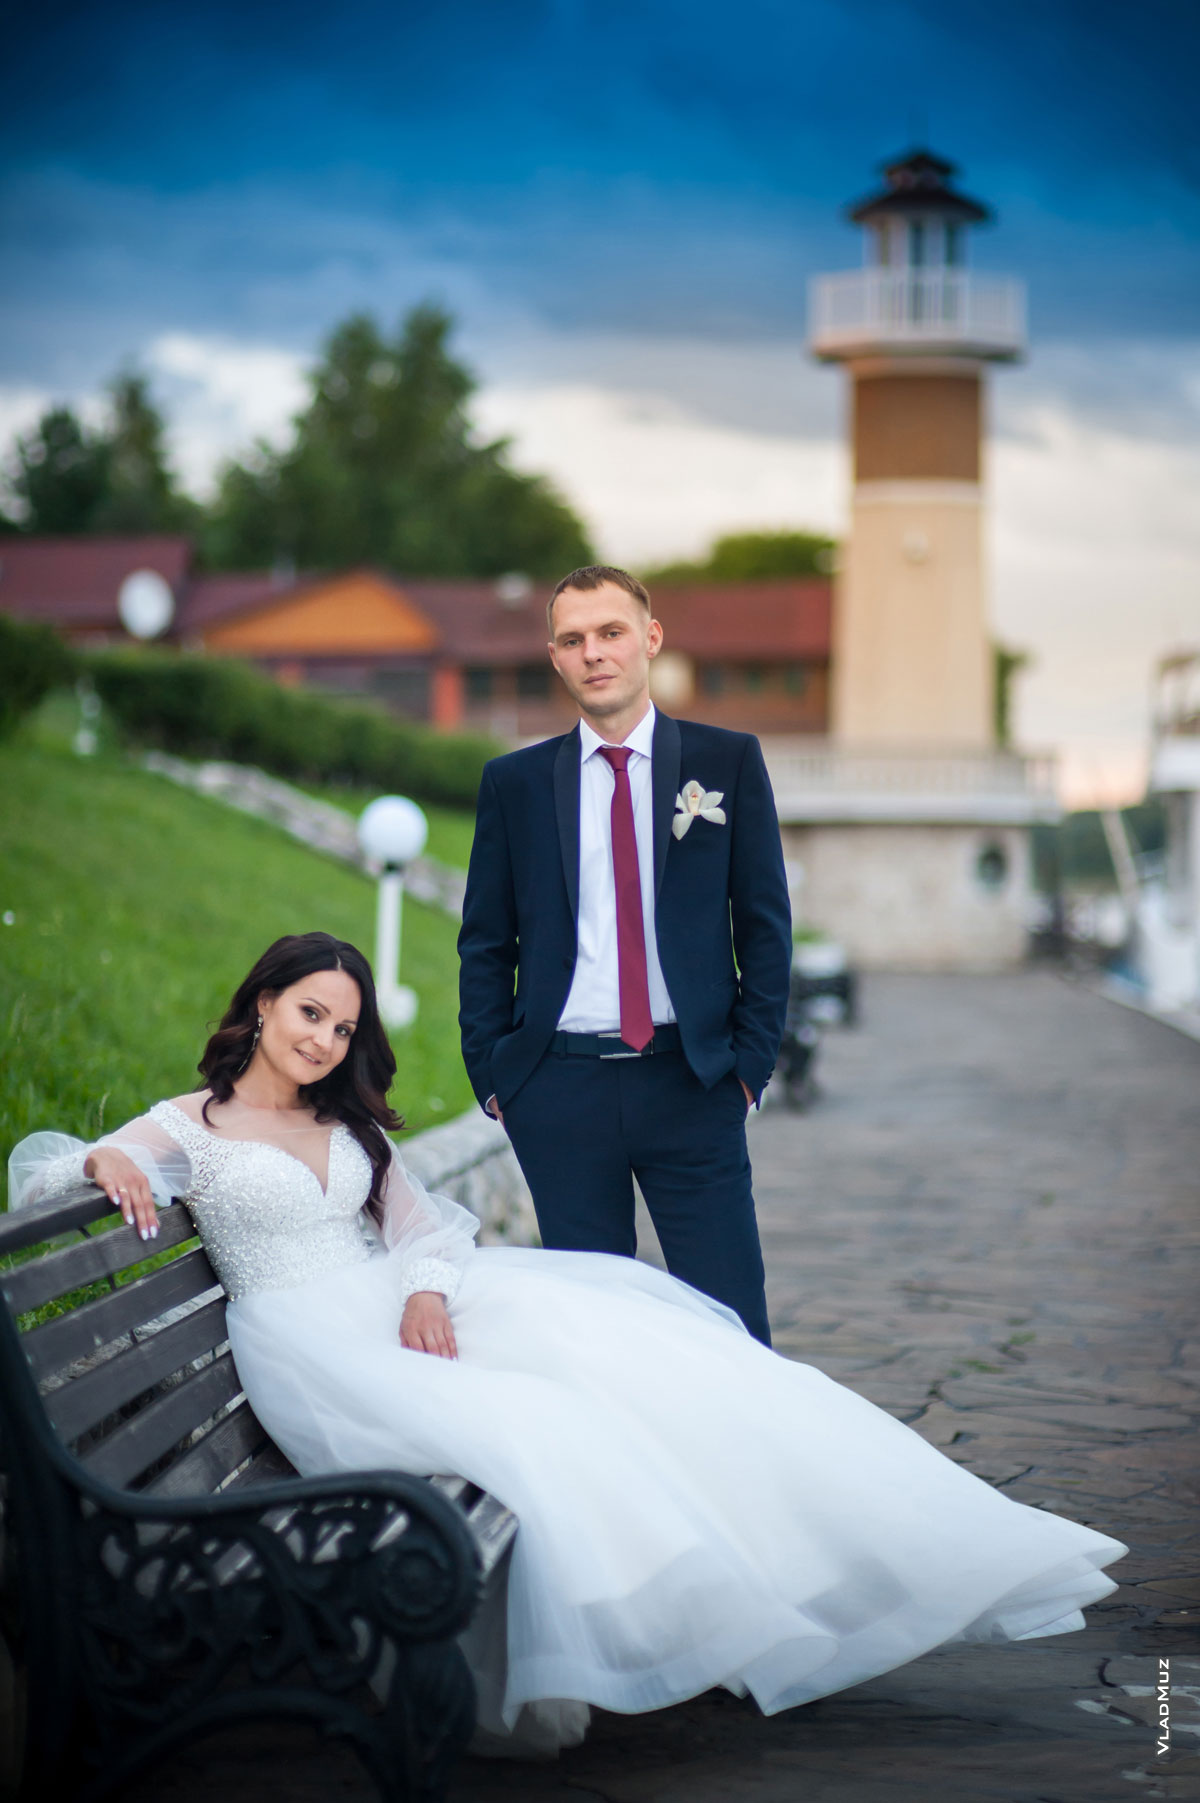 Фото невесты, сидя на лавочке, и жениха в полный рост, стоящего рядом, на фоне маяка